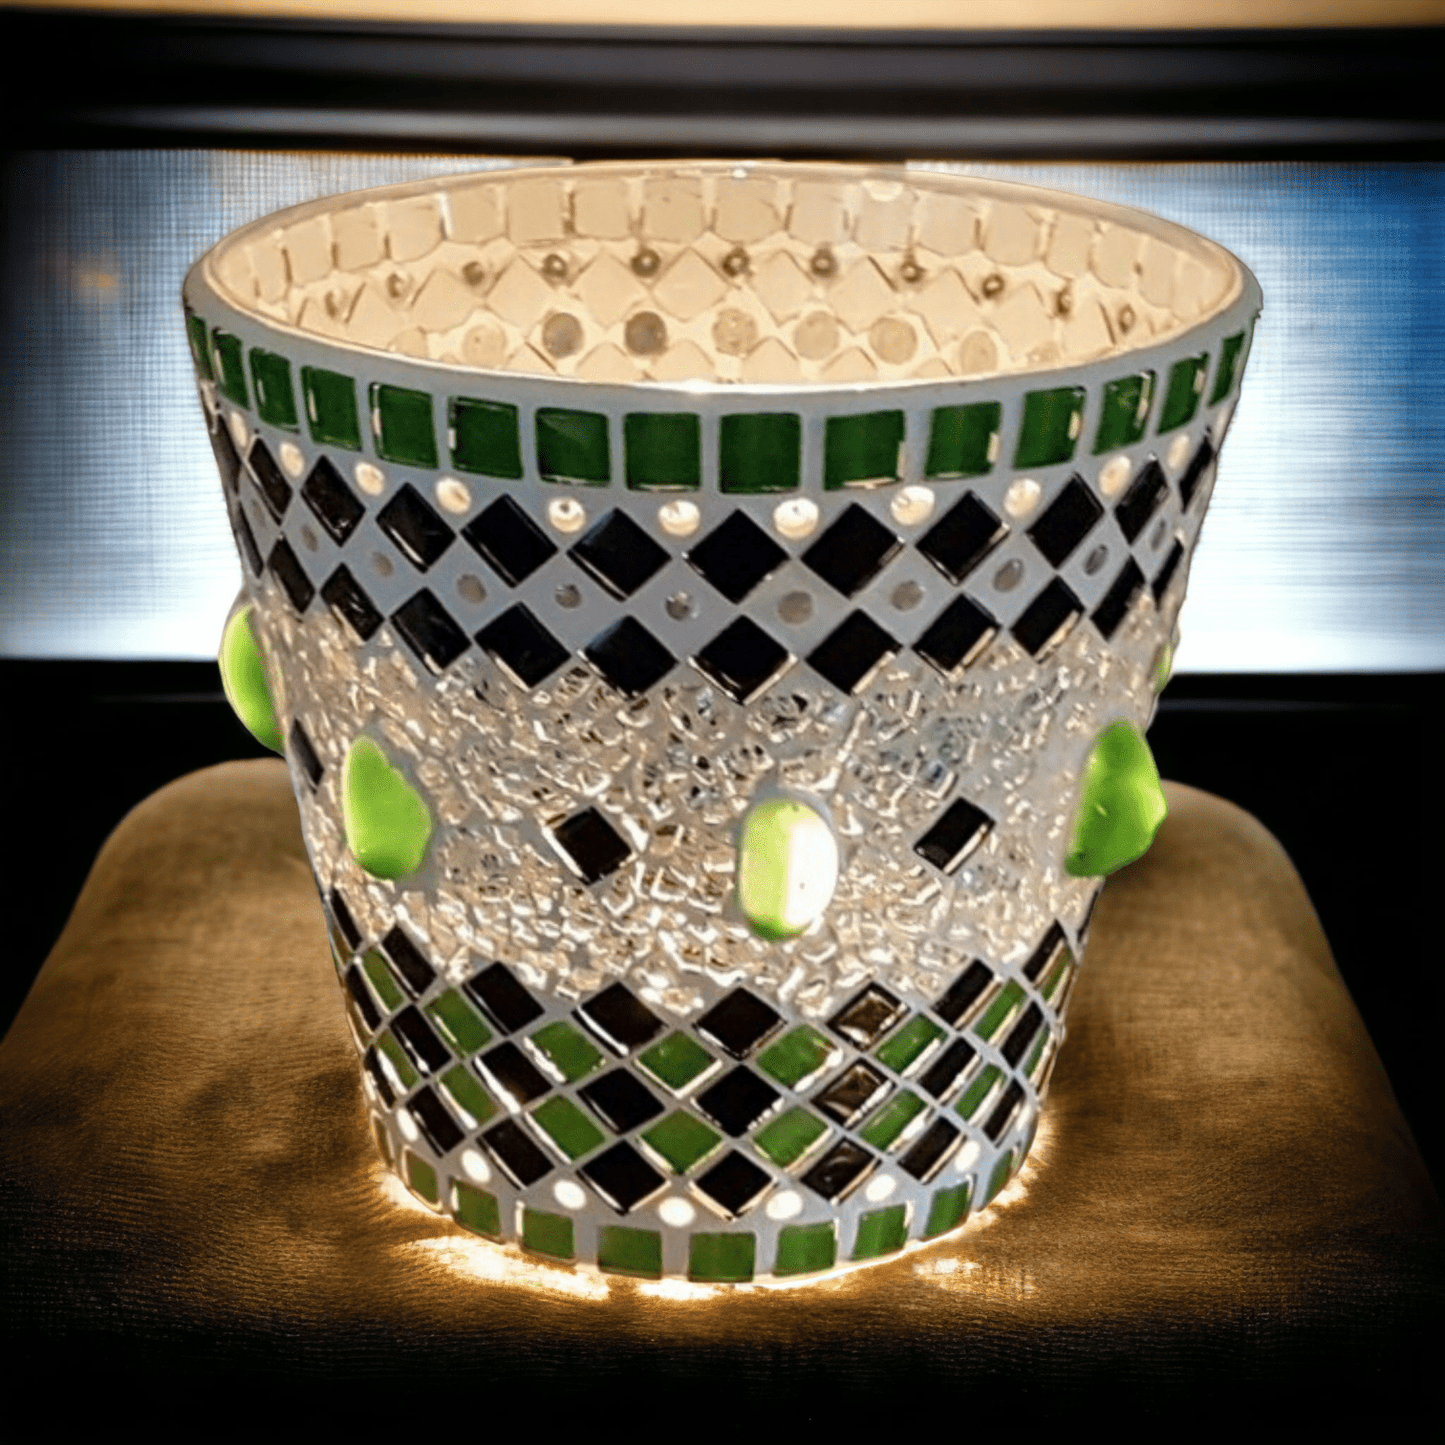 Windlicht grün schwarz spiegel 13 cm hoch - handgemacht - Mosaikkasten aus alt mach neu dekoidee